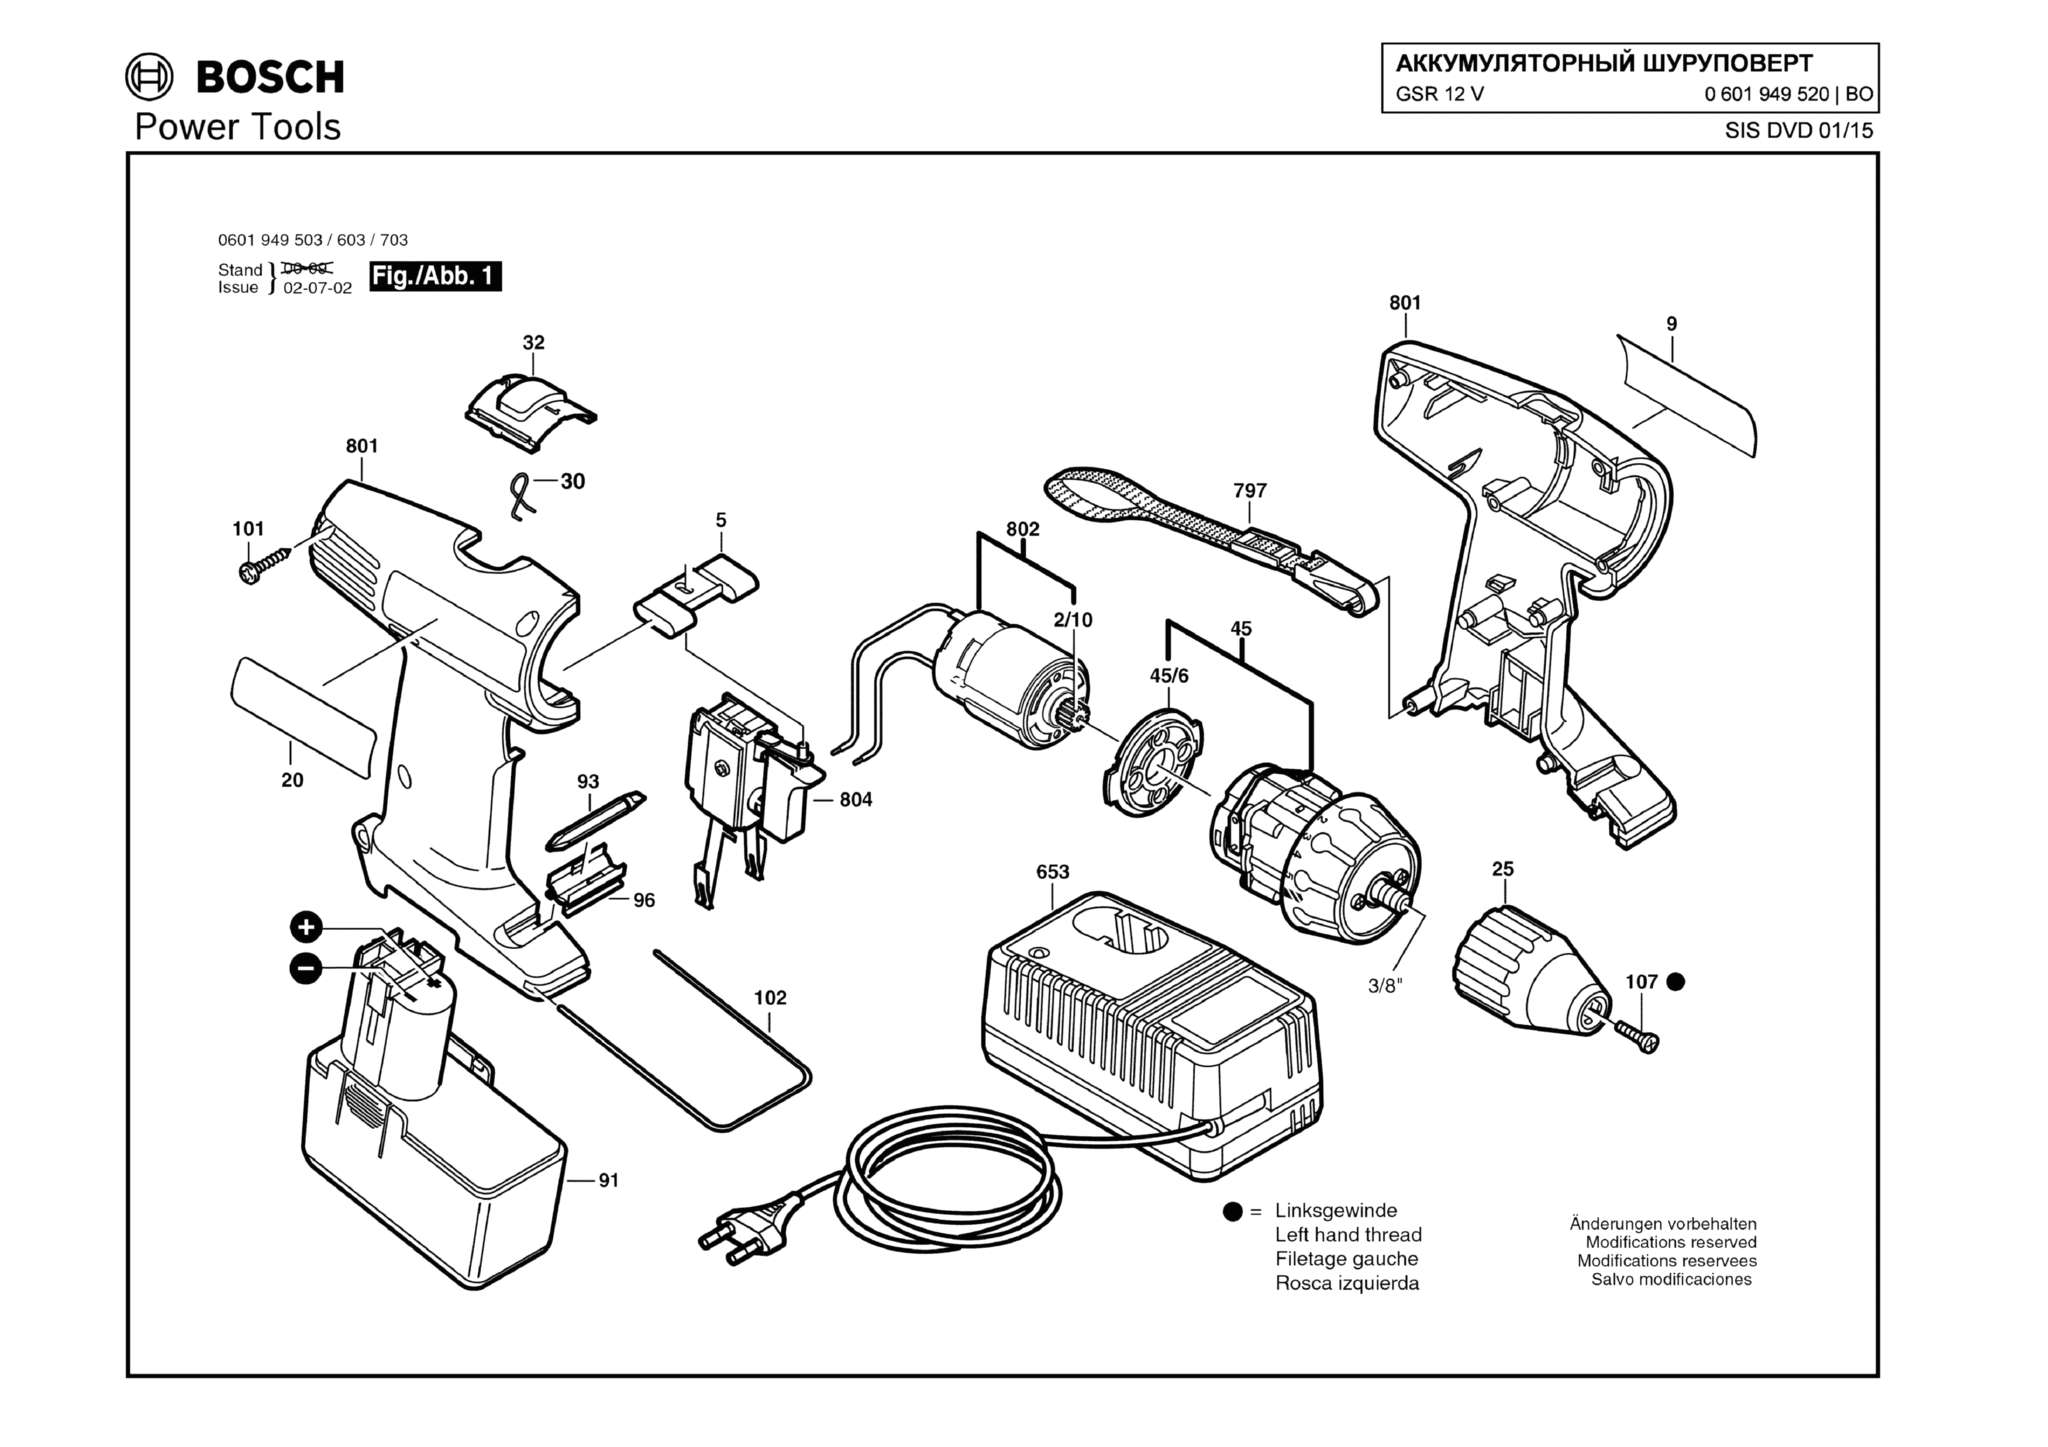 Запчасти, схема и деталировка Bosch GSR 12 V (ТИП 0601949520)